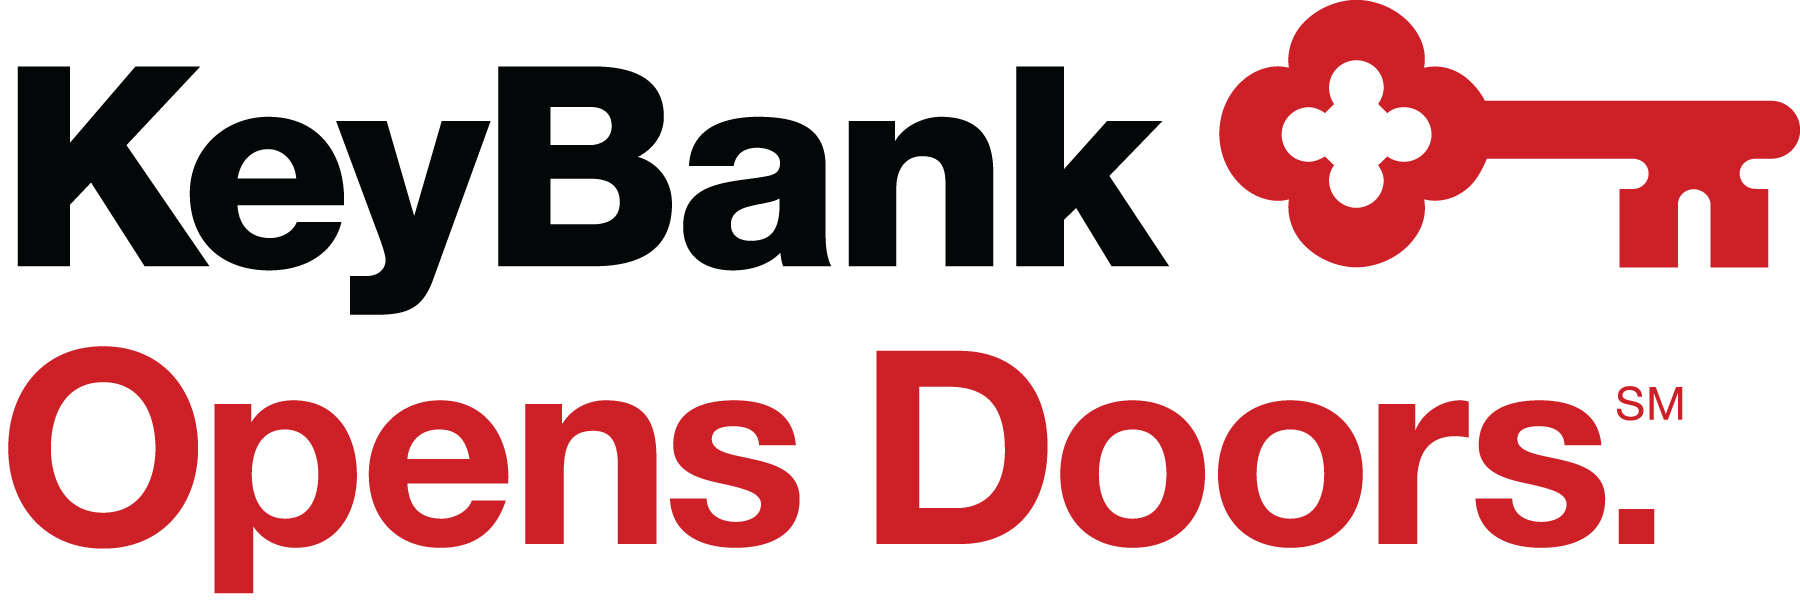 KeyBank-logo-OpensDoors-RGB-SM